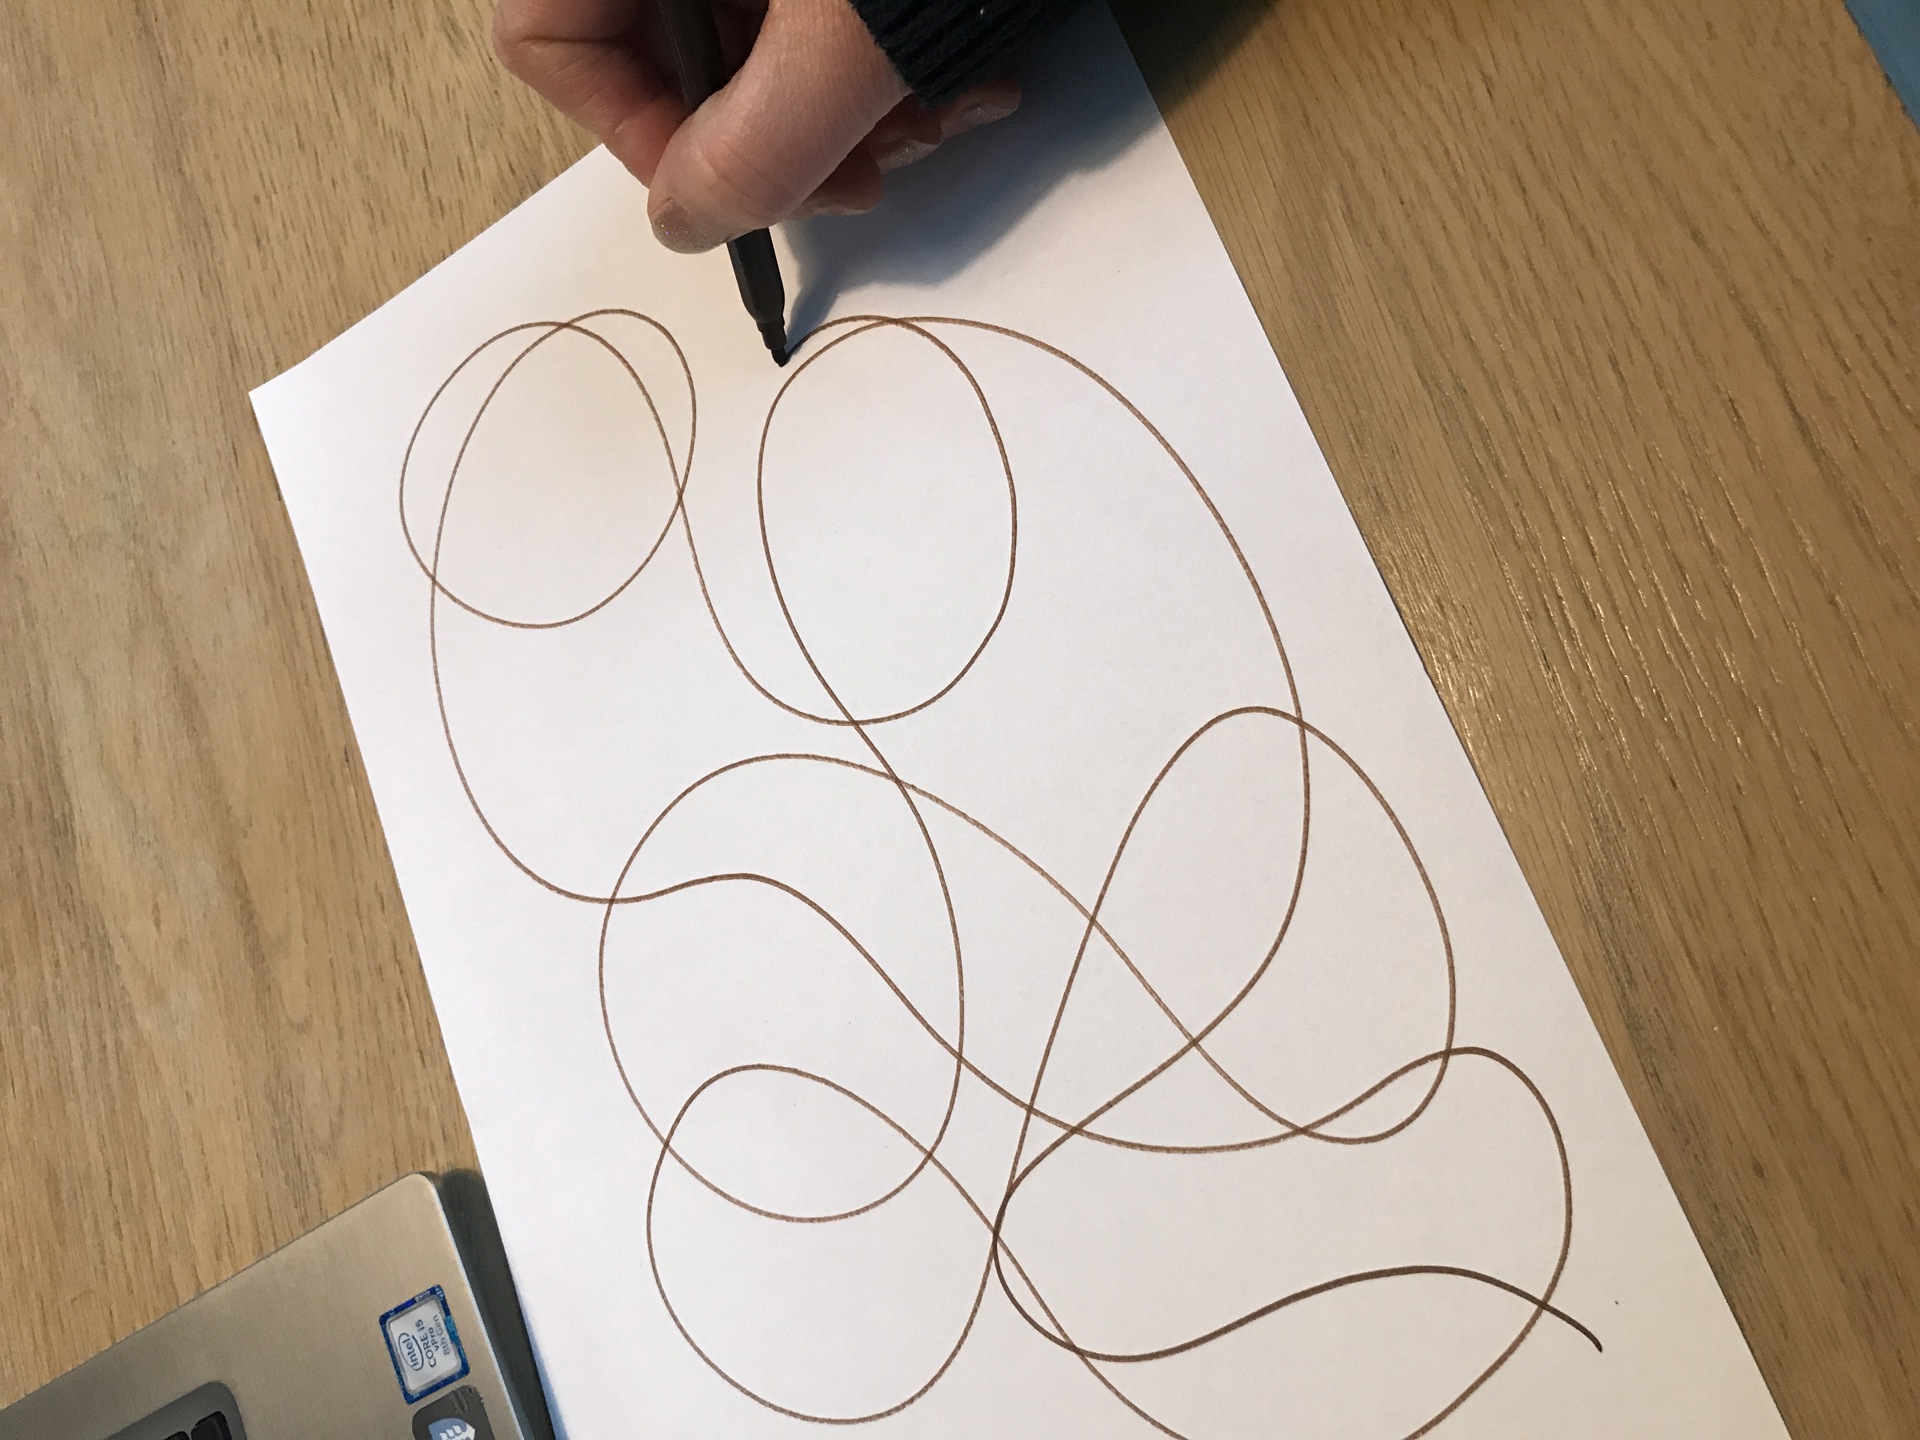 En hånd tegner kruseduller med blyant på papir. Foto